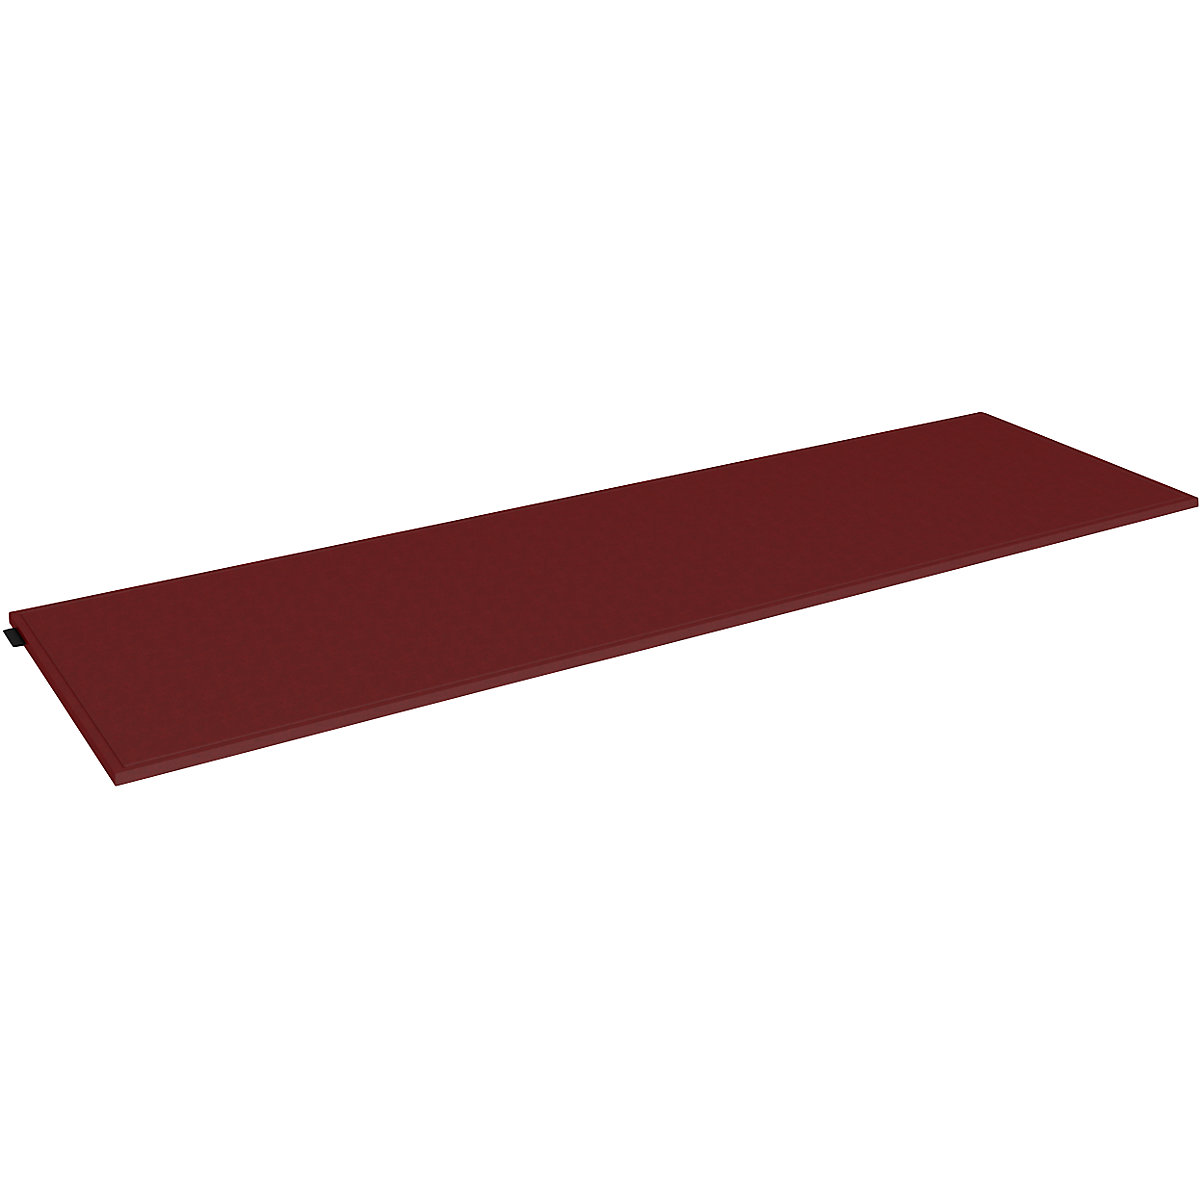 Sedežna blazina iz klobučevine za enojni zaboj – mauser, širina 1147 mm, rdeče barve-2